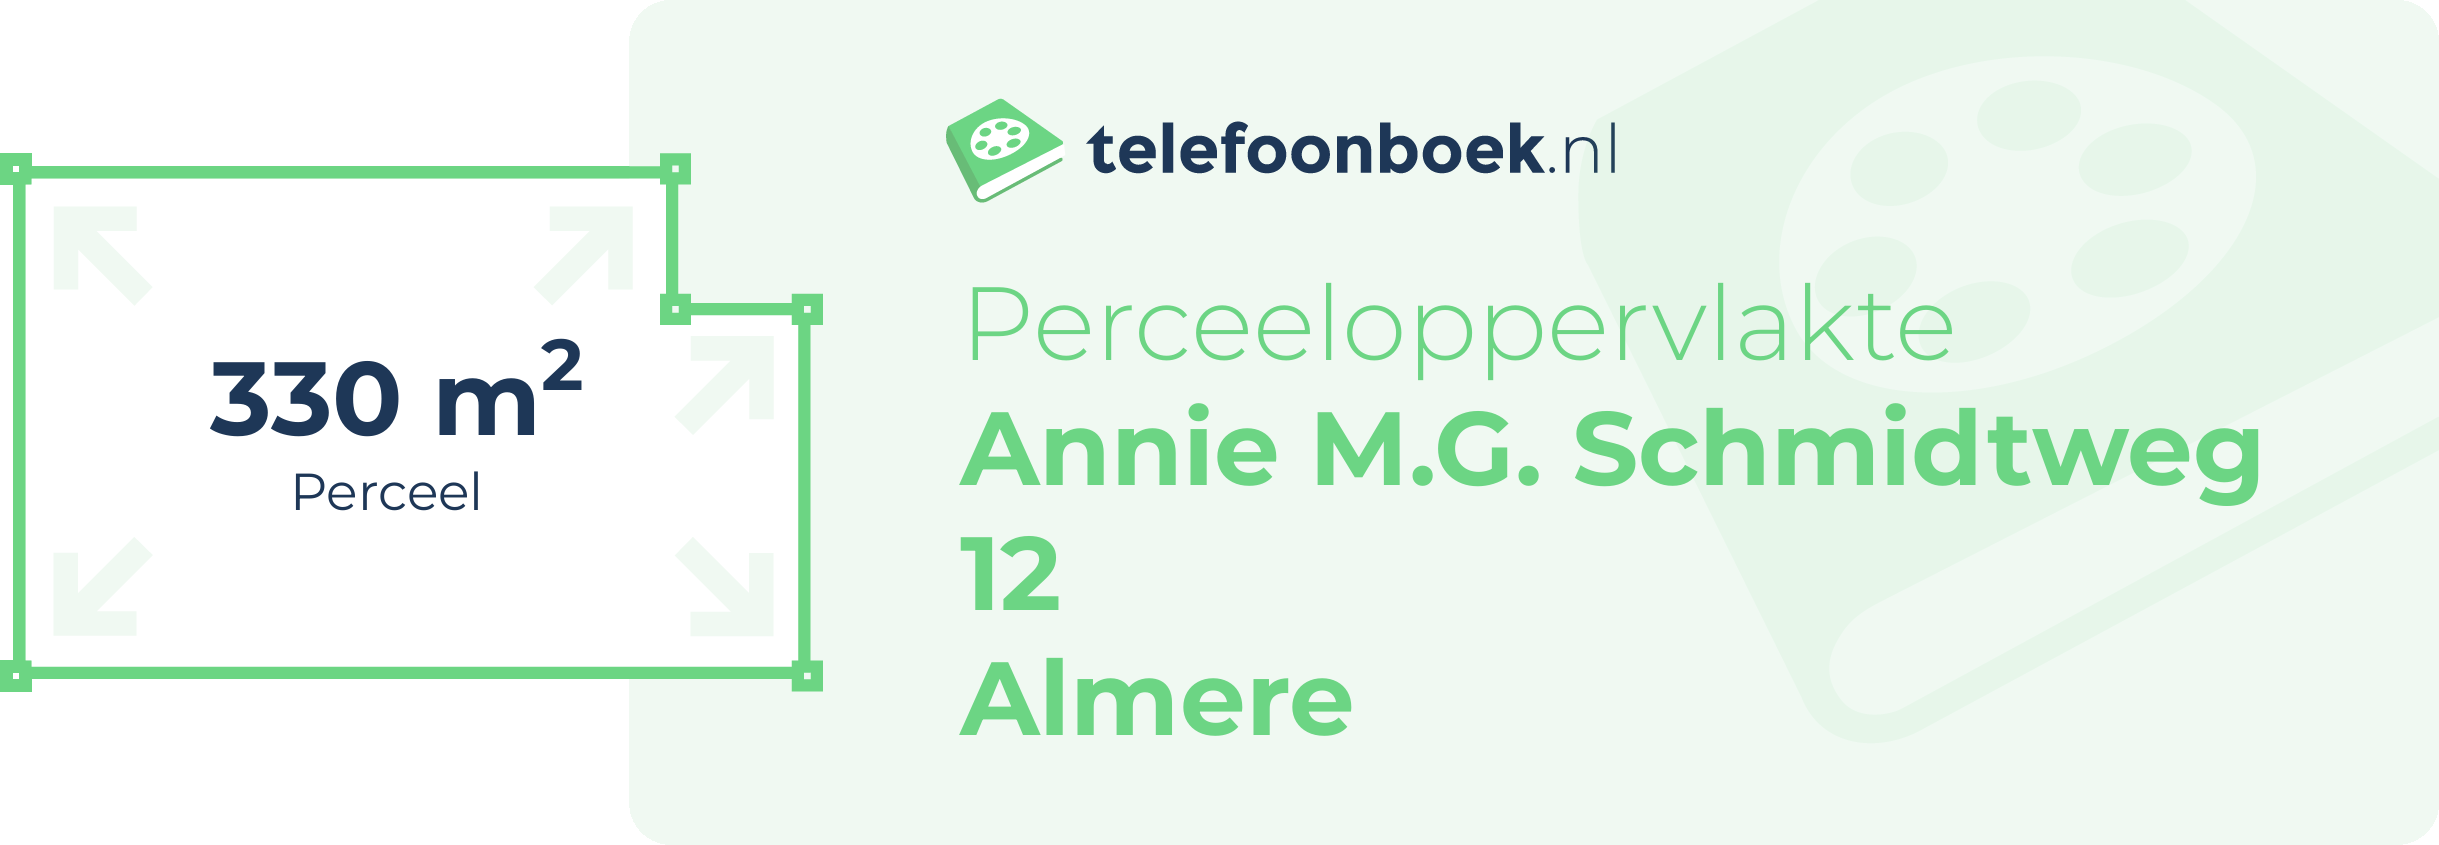 Perceeloppervlakte Annie M.G. Schmidtweg 12 Almere